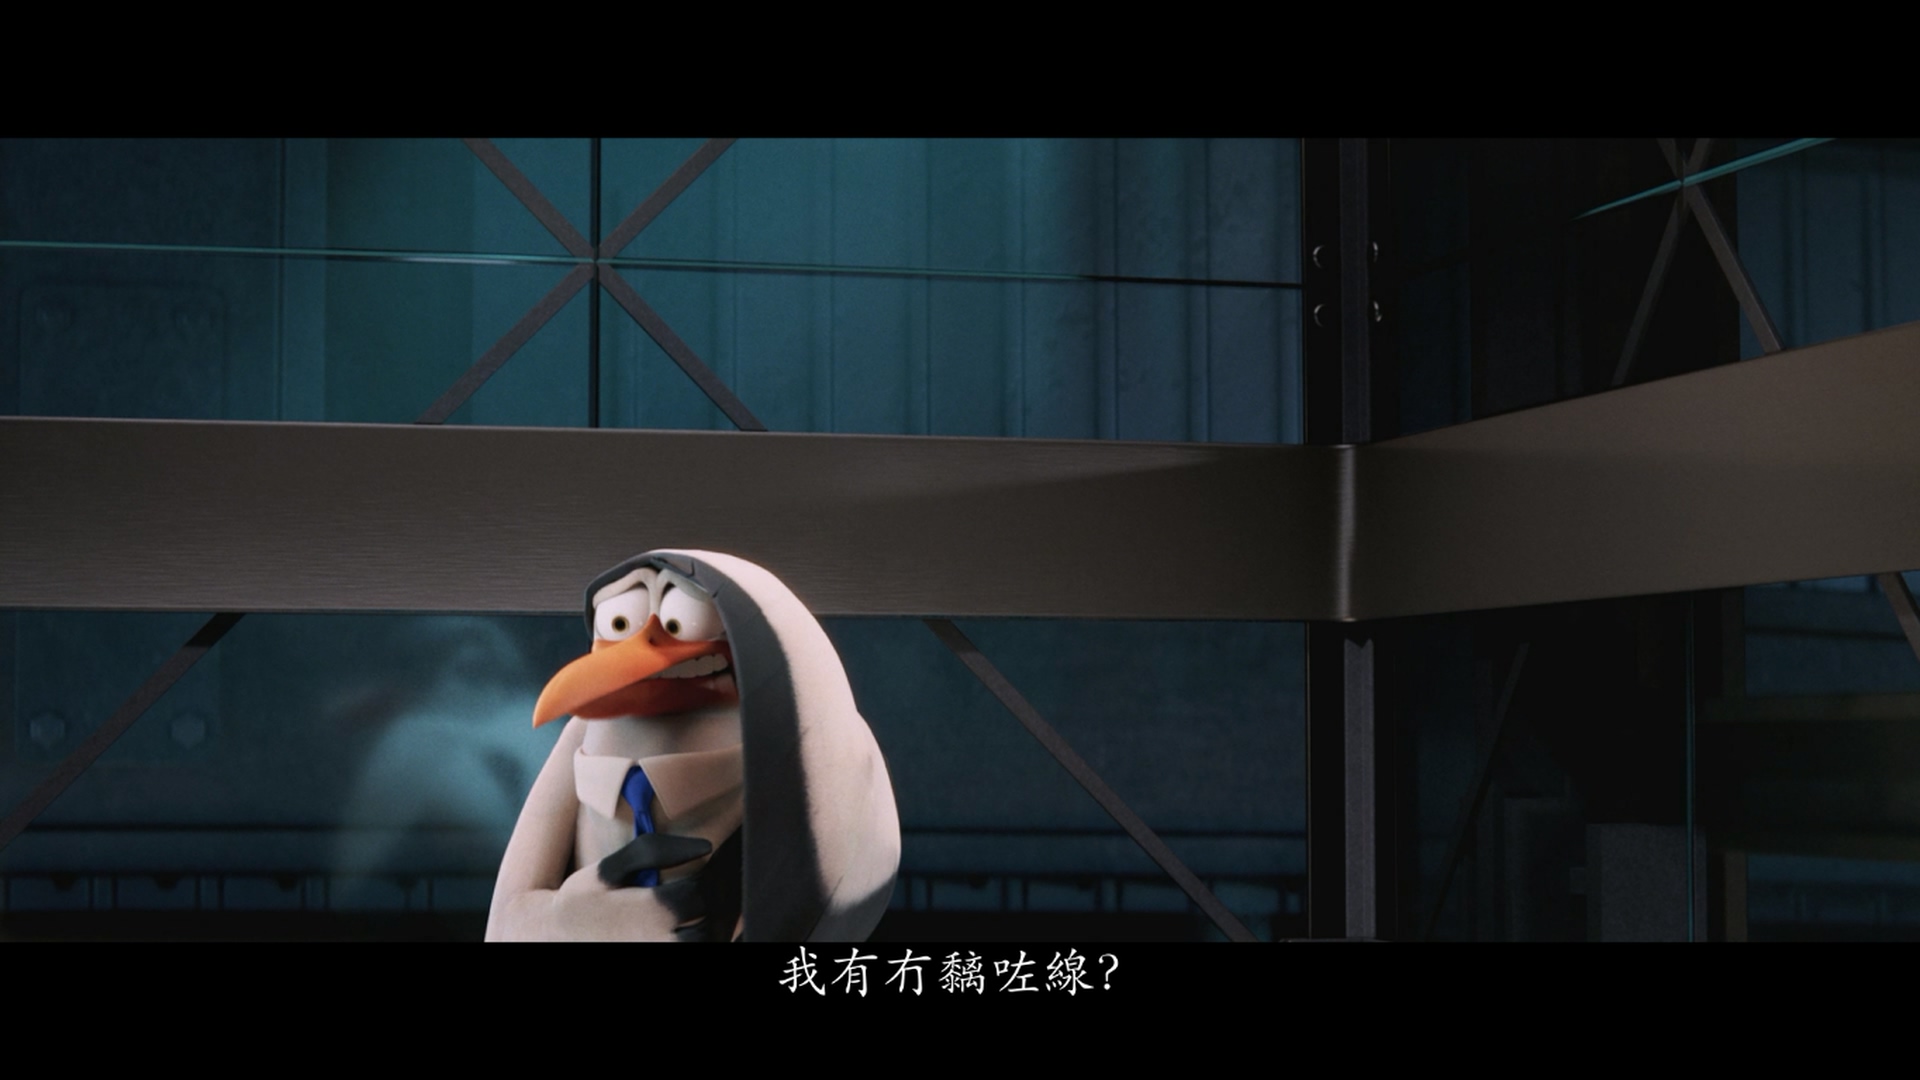 [逗鸟外传·萌宝满天飞].Storks.2016.3D.BluRay.1080p.AVC.DTS-HD.MA.7.1-TTG(iTunes)    29.46G-8.jpg